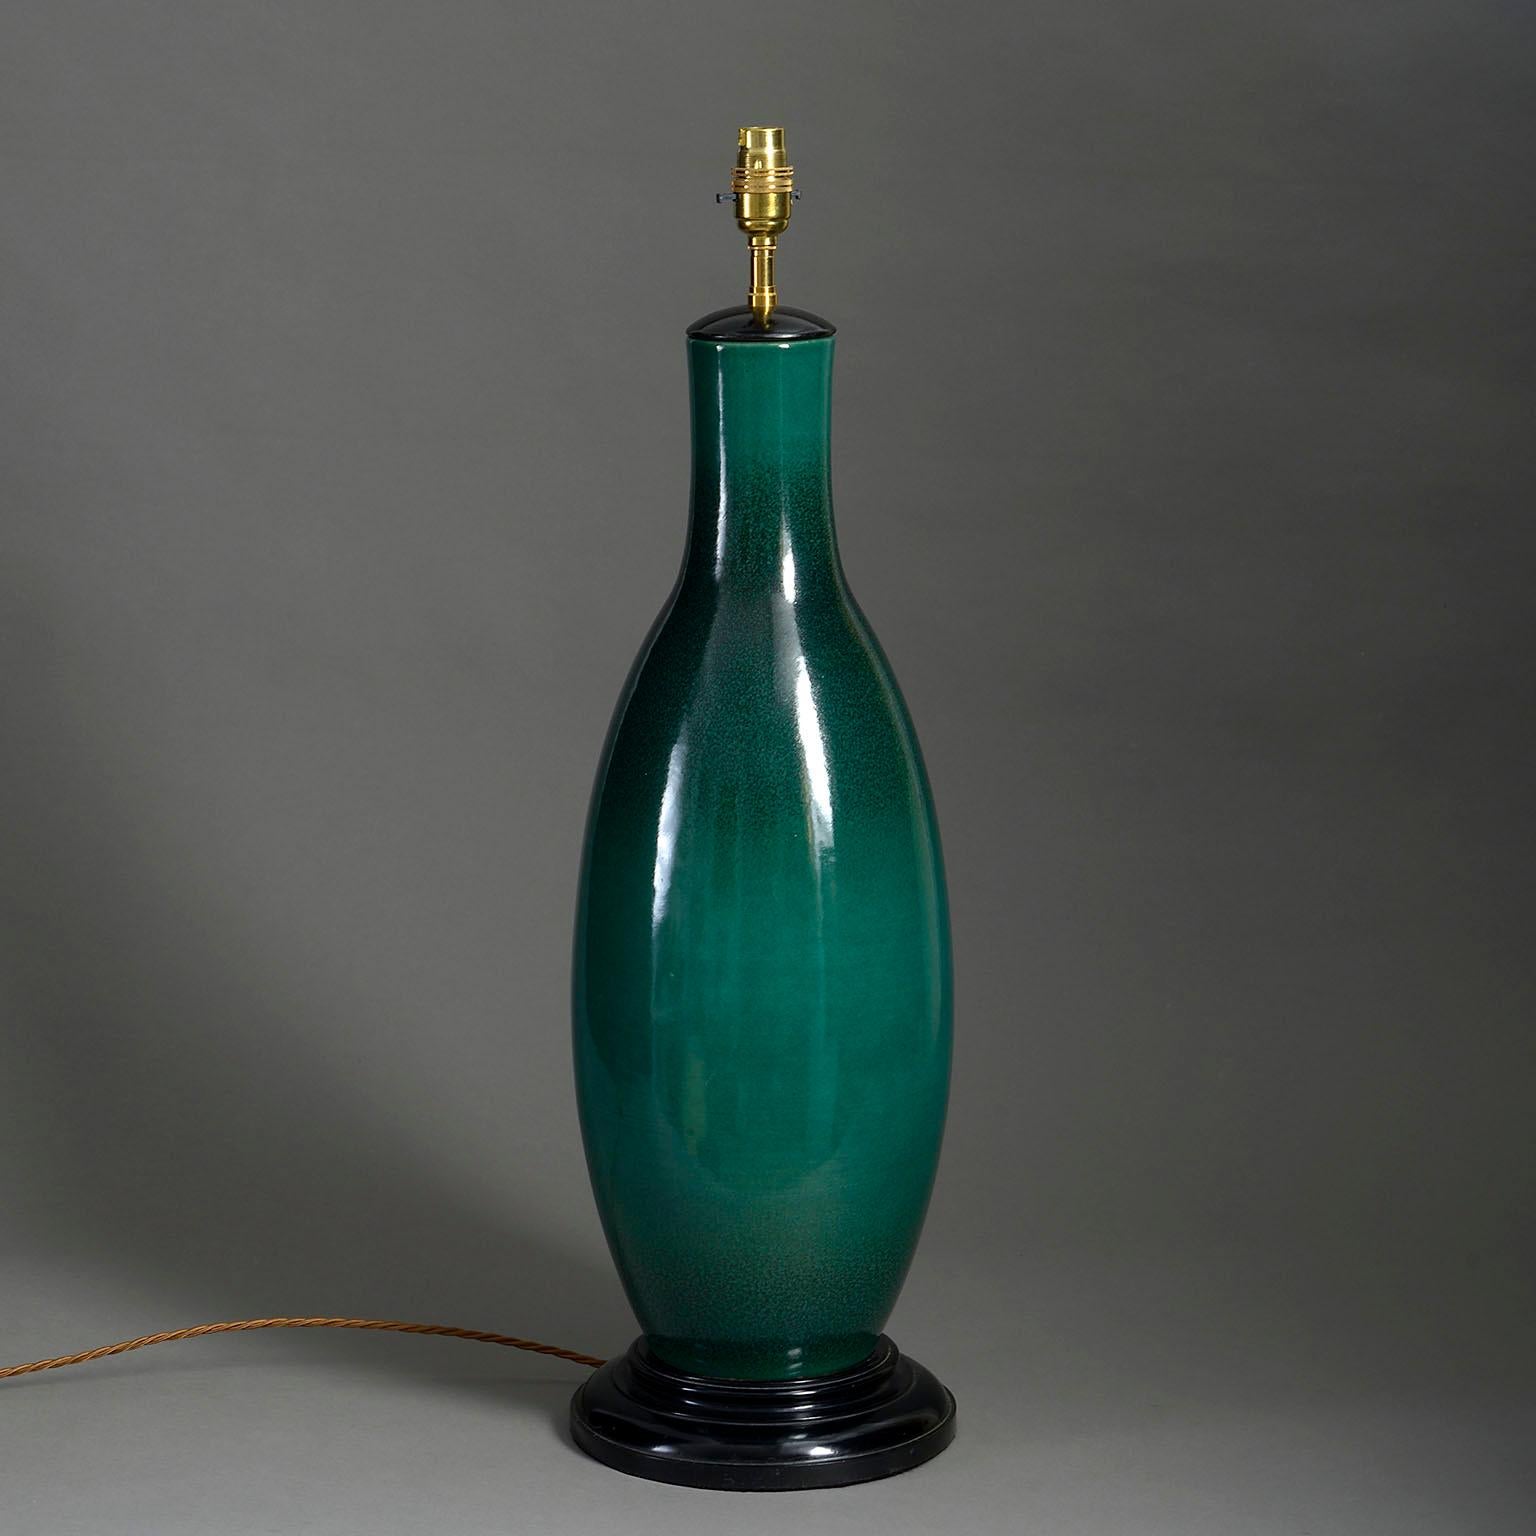 Un grand vase émaillé vert foncé de forme allongée en forme de bouteille, datant du milieu du vingtième siècle, monté sur une base ébénisée tournée pour servir de lampe de table.

Les dimensions se réfèrent au vase et à la base ébénisée